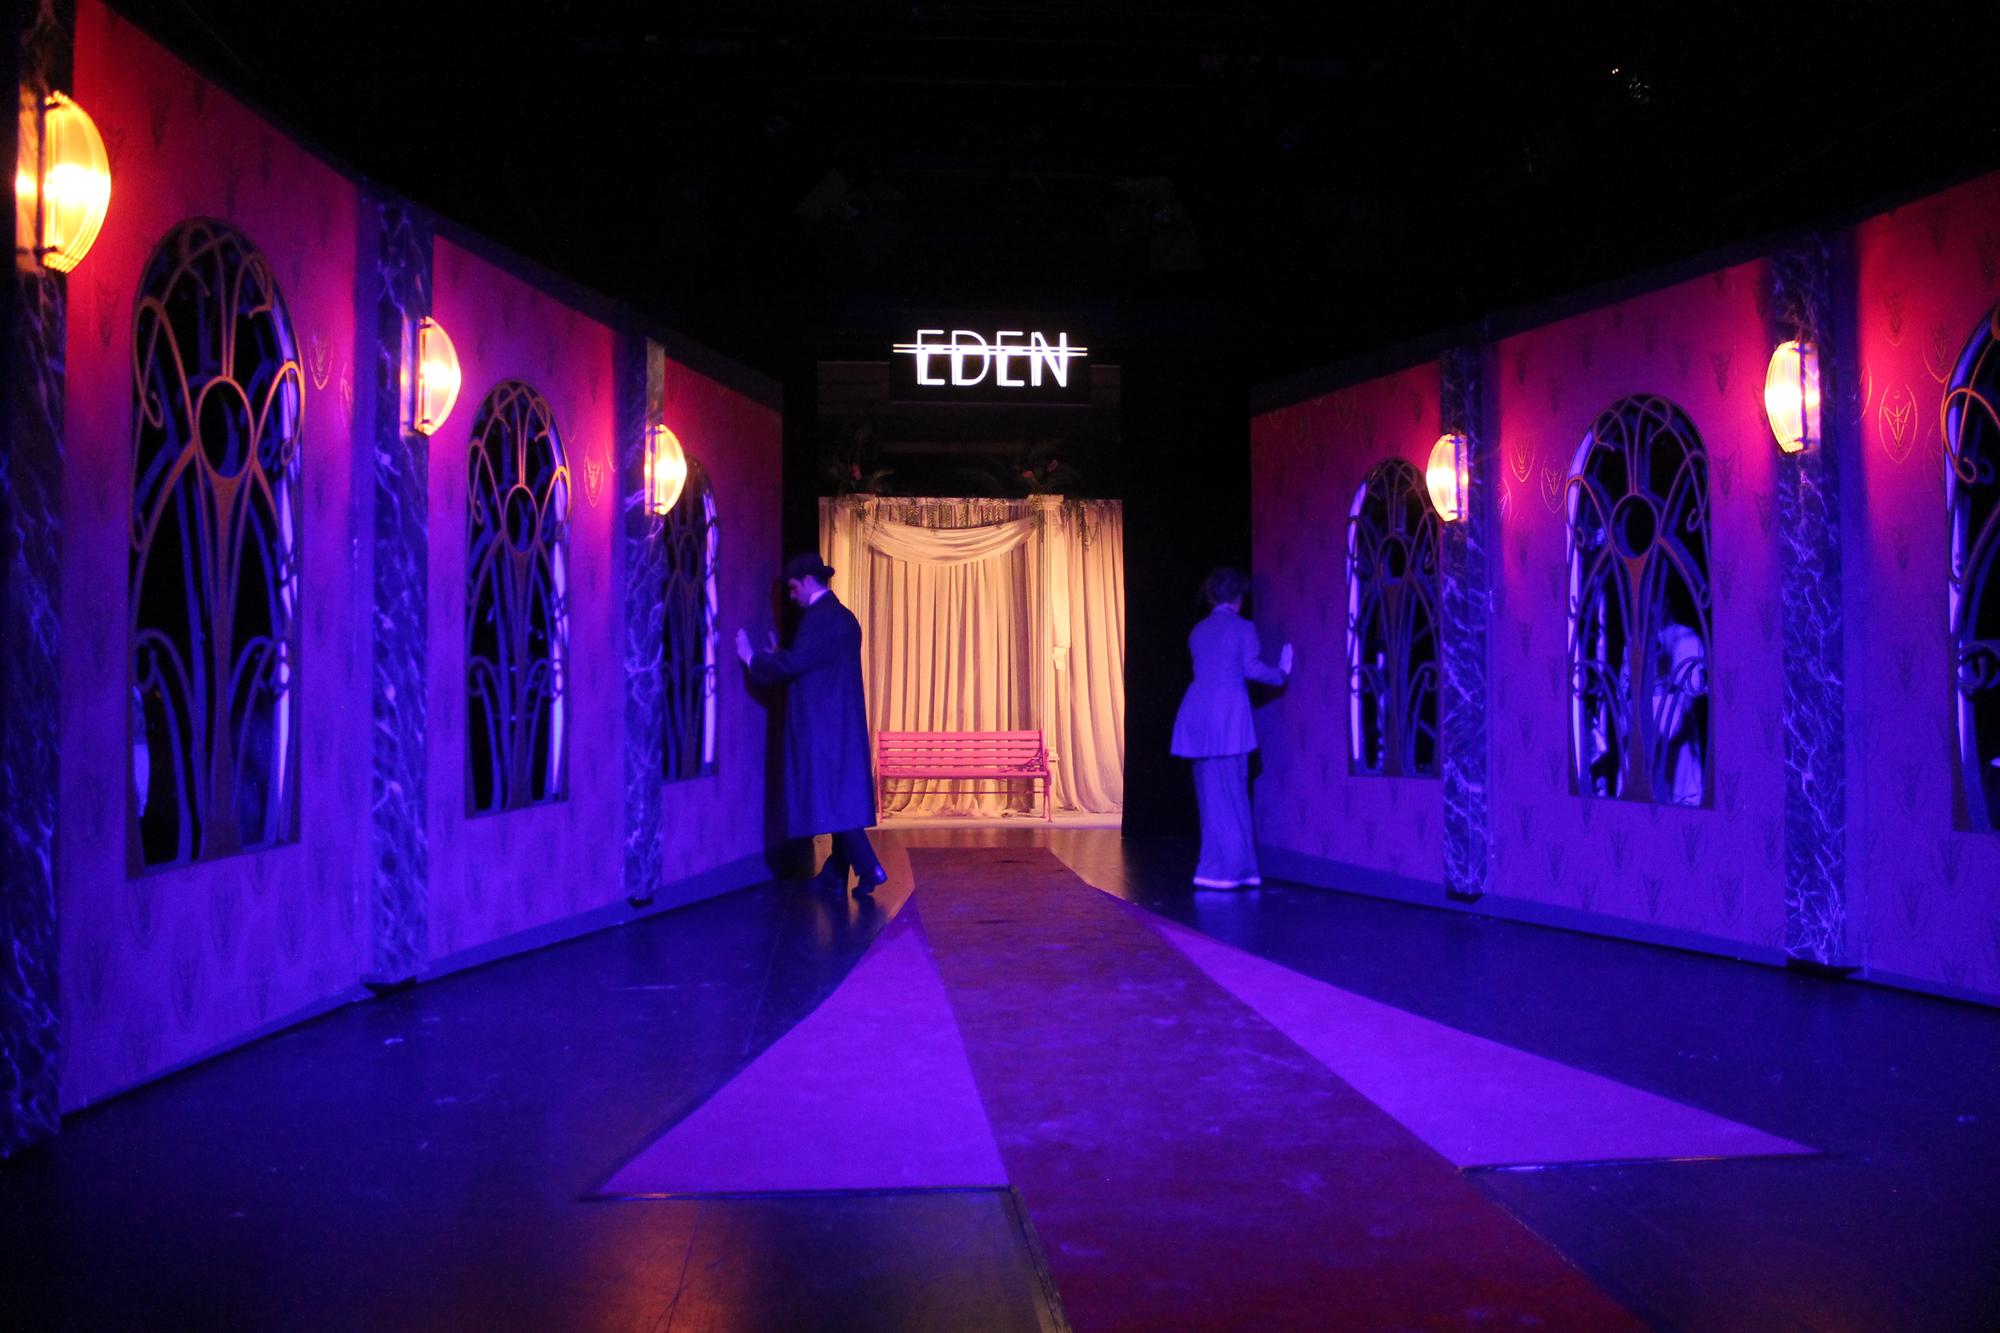 Rosa und Karl
        am Theater Osnabrück 2019 in Regie von Sophia Barthelmes. Zwei
        düstre Hotelwände mit Fenstern und Wandleuchten öffnen sich
        trichterförmig zu einer kitschigen Kulisse mit rosa Bank,
        darüber leuchtet der Schriftzug "Eden".